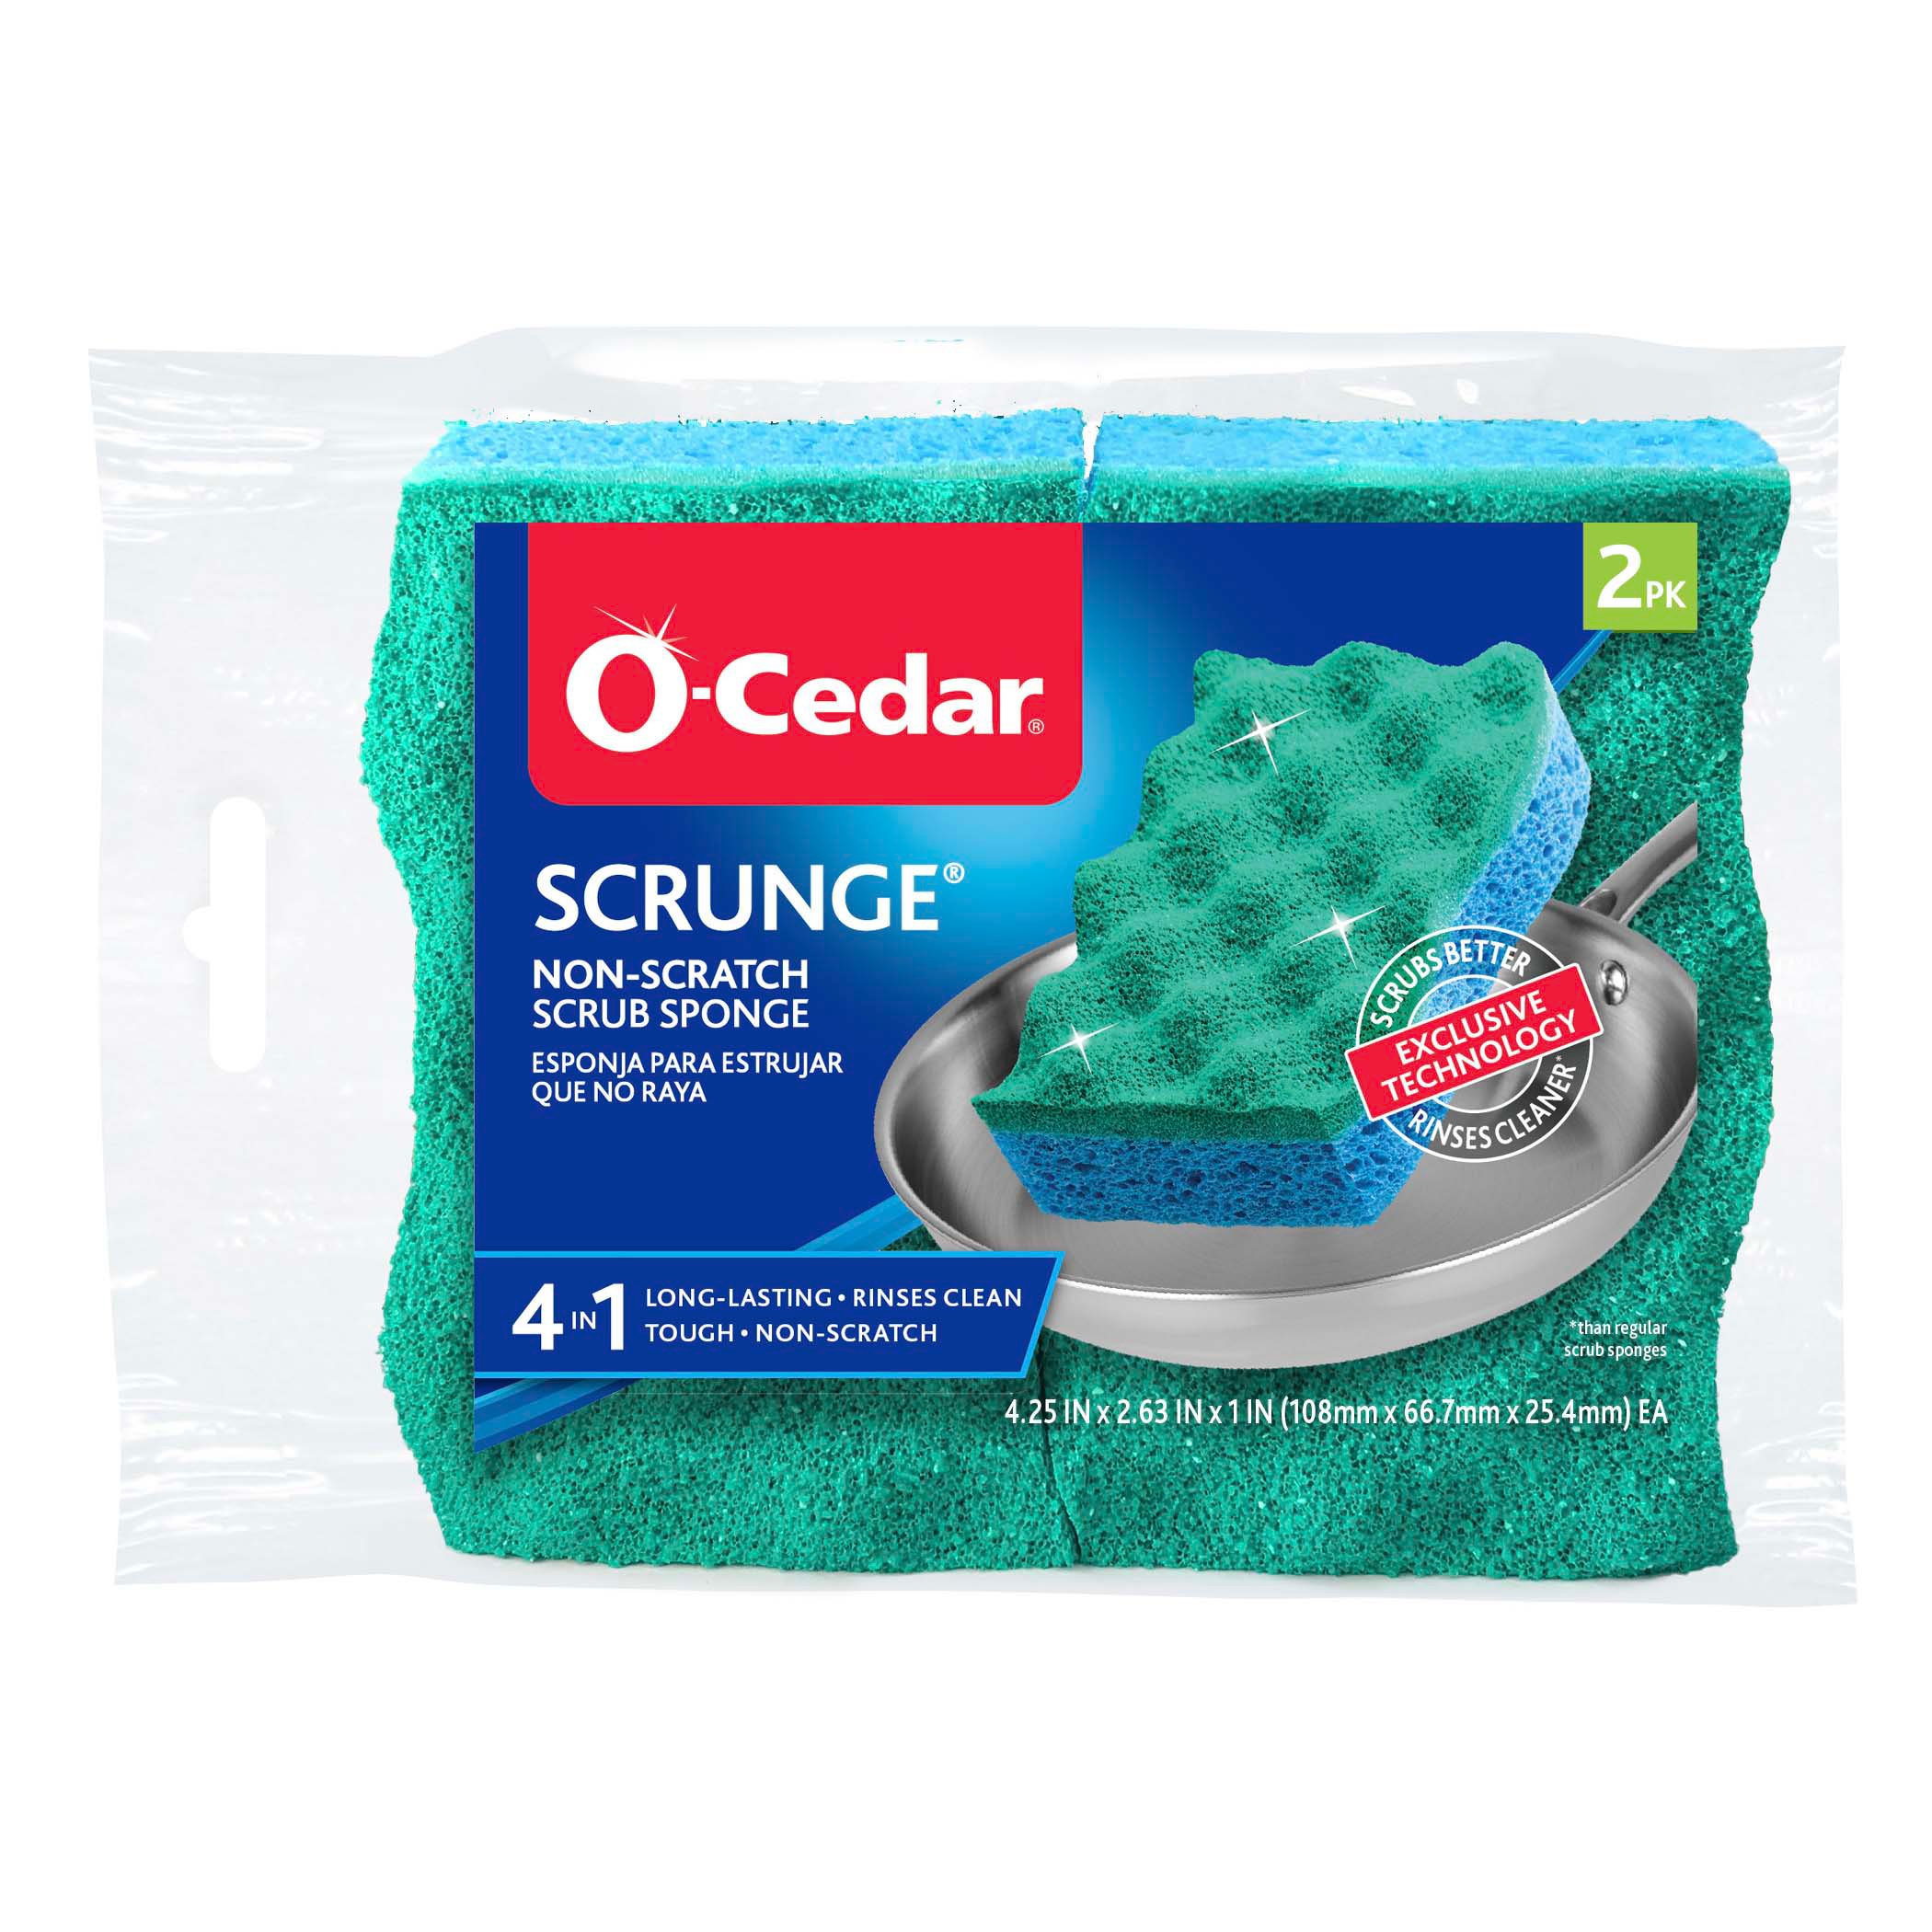 O-Cedar Scrunge Multi-Use Sponge - Shop Sponges & Scrubbers at H-E-B